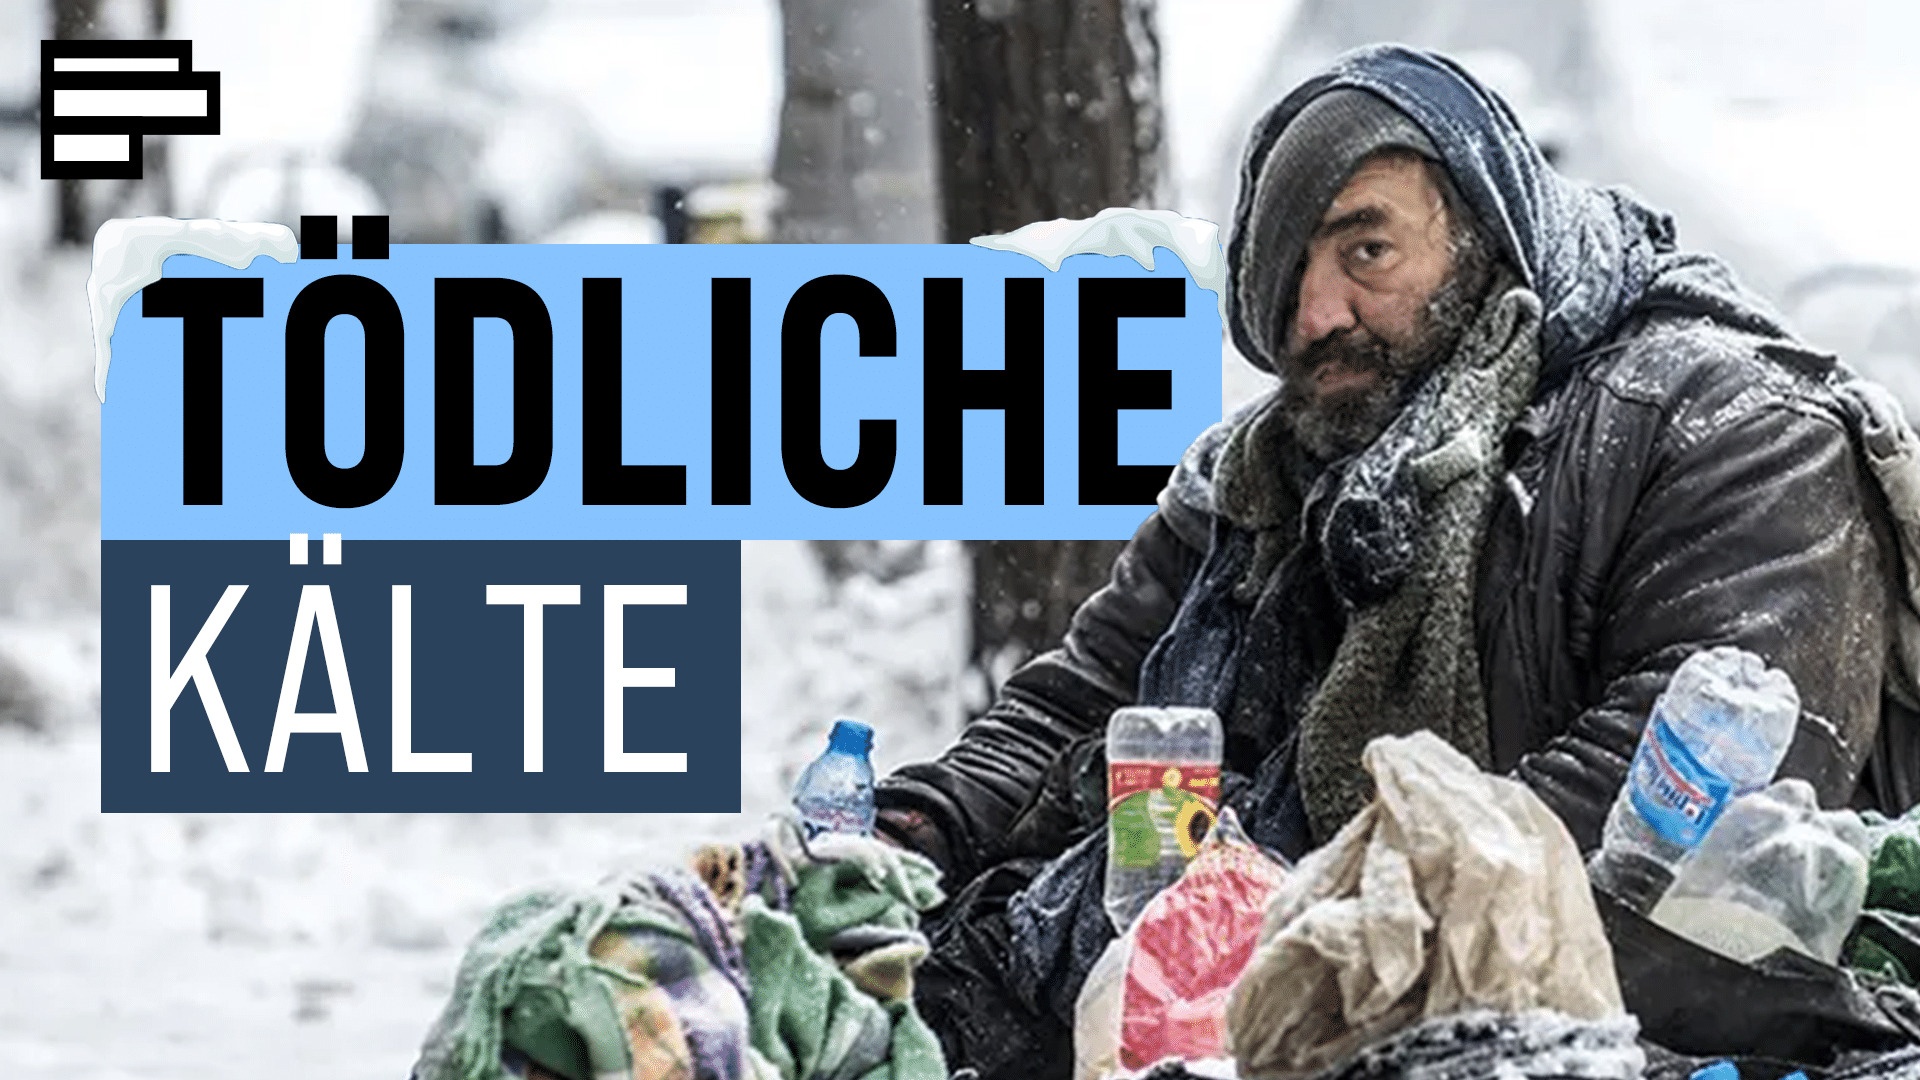 Armut in Deutschland: Wie viel Obdachlose gibt es wirklich?